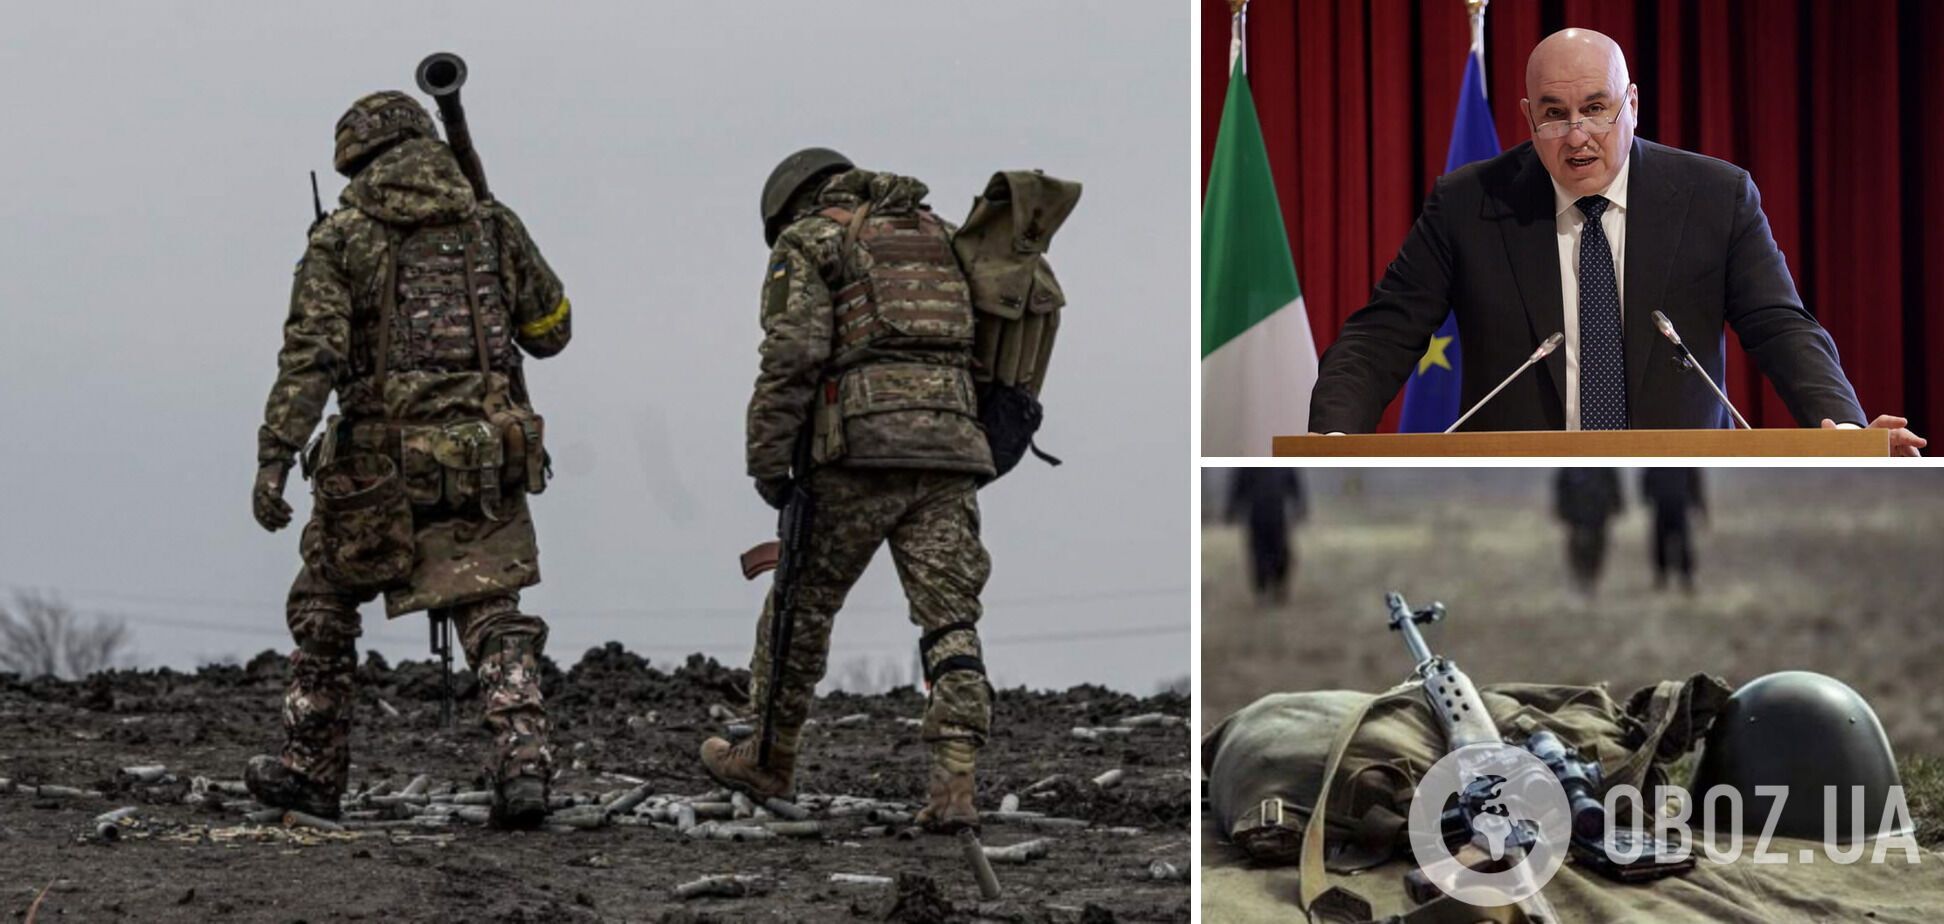 'Час ще не настав': міністр оборони Італії висловився щодо проведення мирних переговорів між Україною і РФ